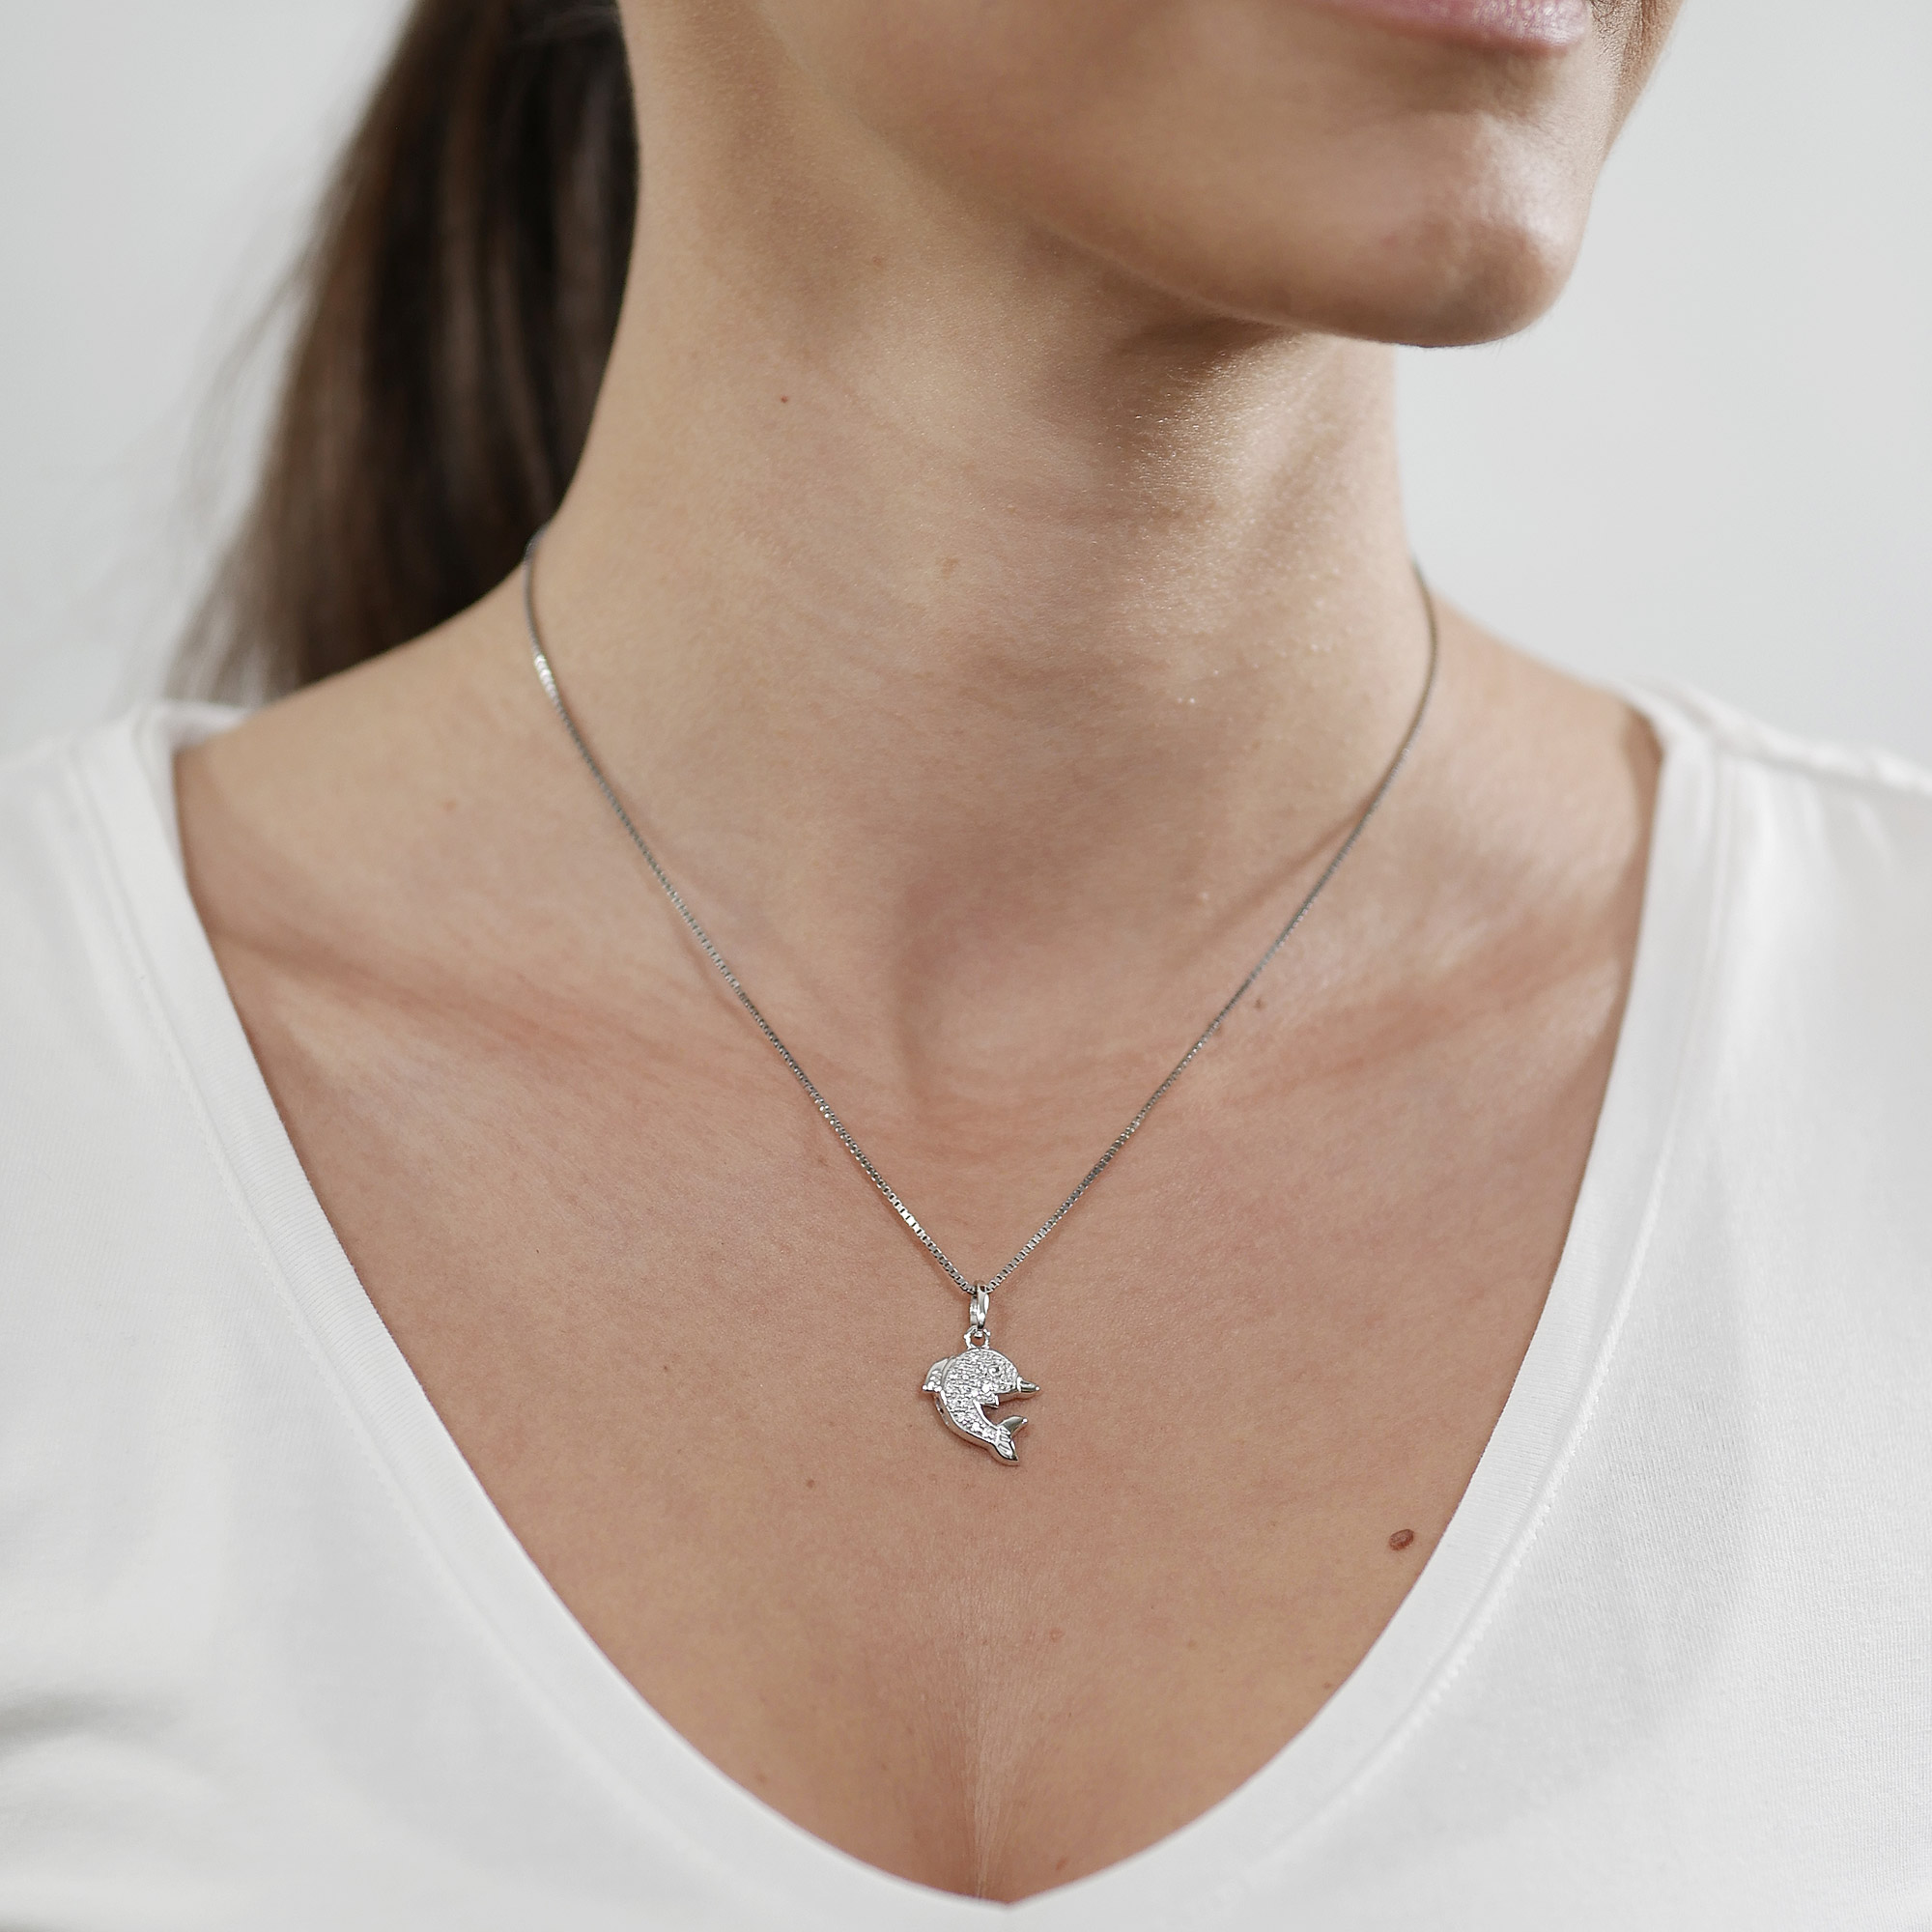 Neu und OVP Silbernes Delfin-Schmuckset mit Halskette und Ohrringen 